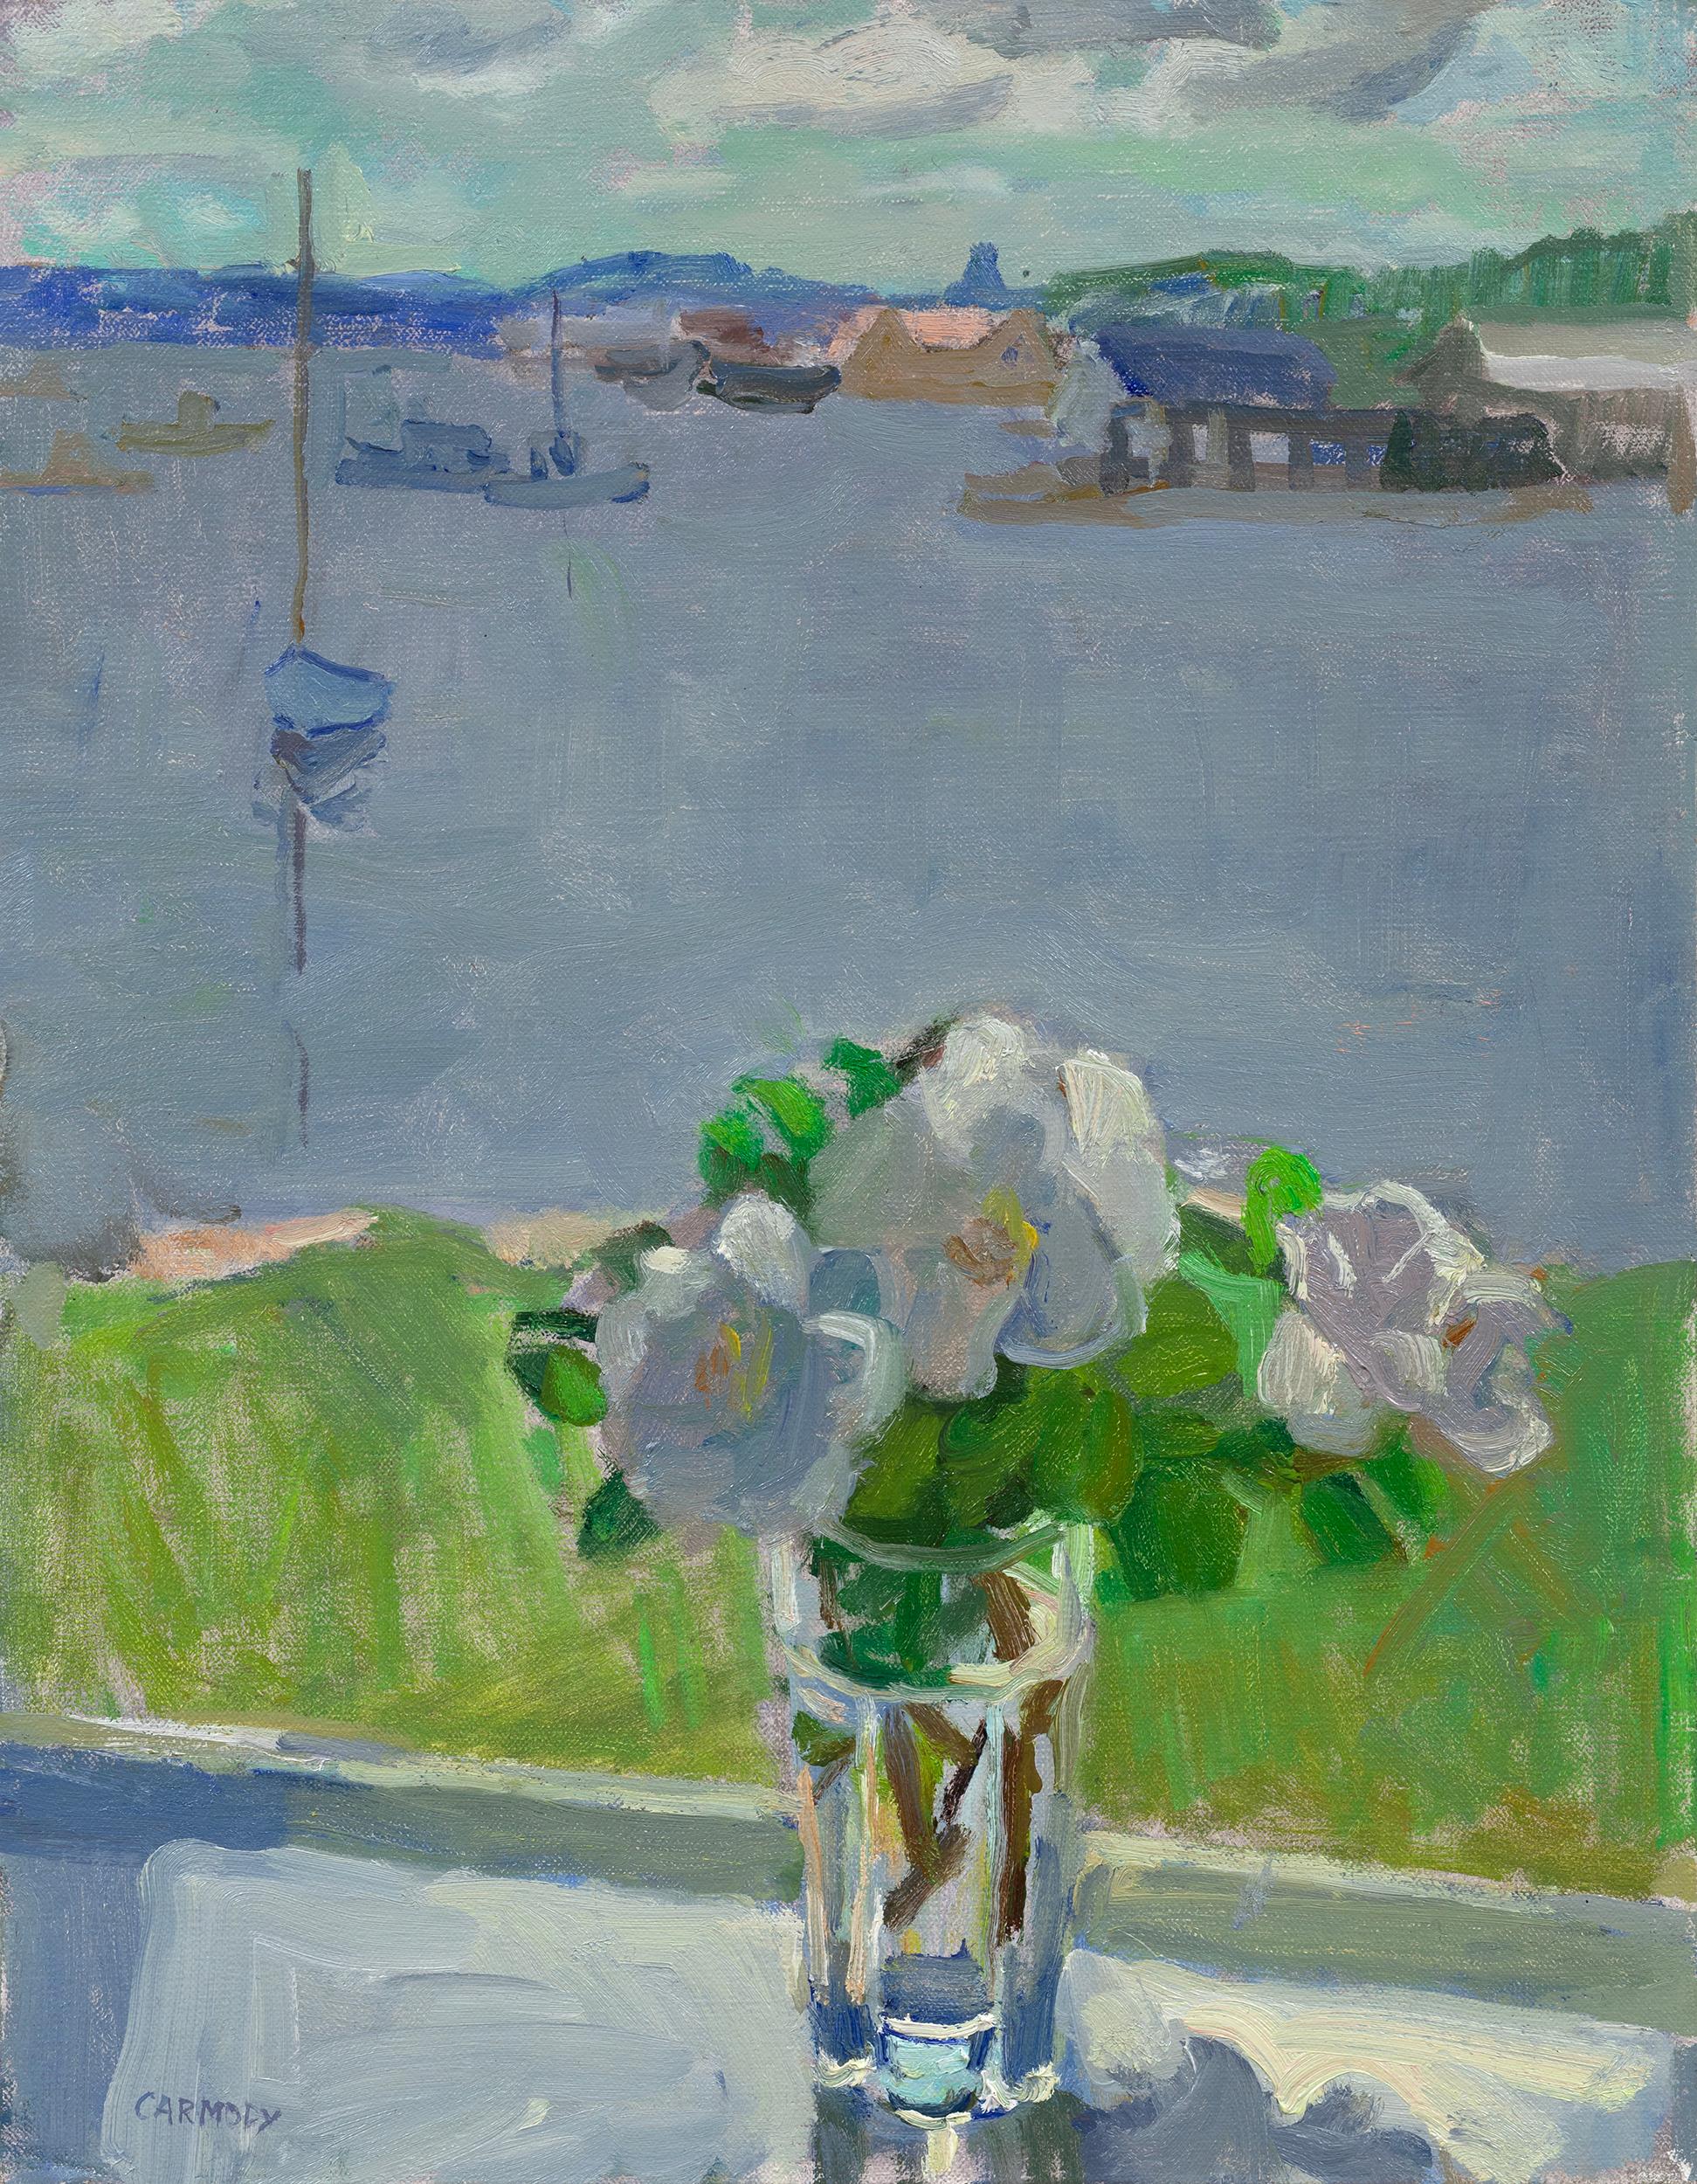 Kelly Carmody Still-Life Painting – "Beach Roses and the Harbor" Zeitgenössisches Stillleben mit Hafen und Booten